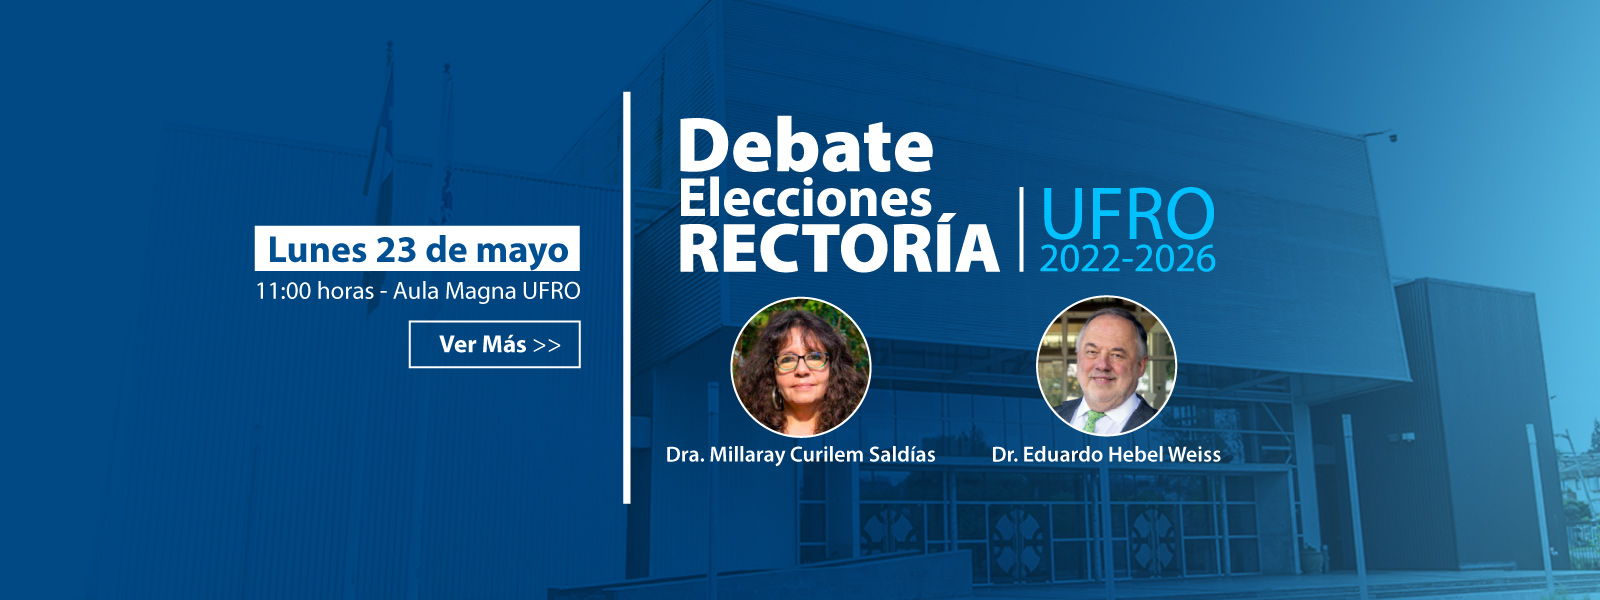 Debate Elecciones Rector 2022